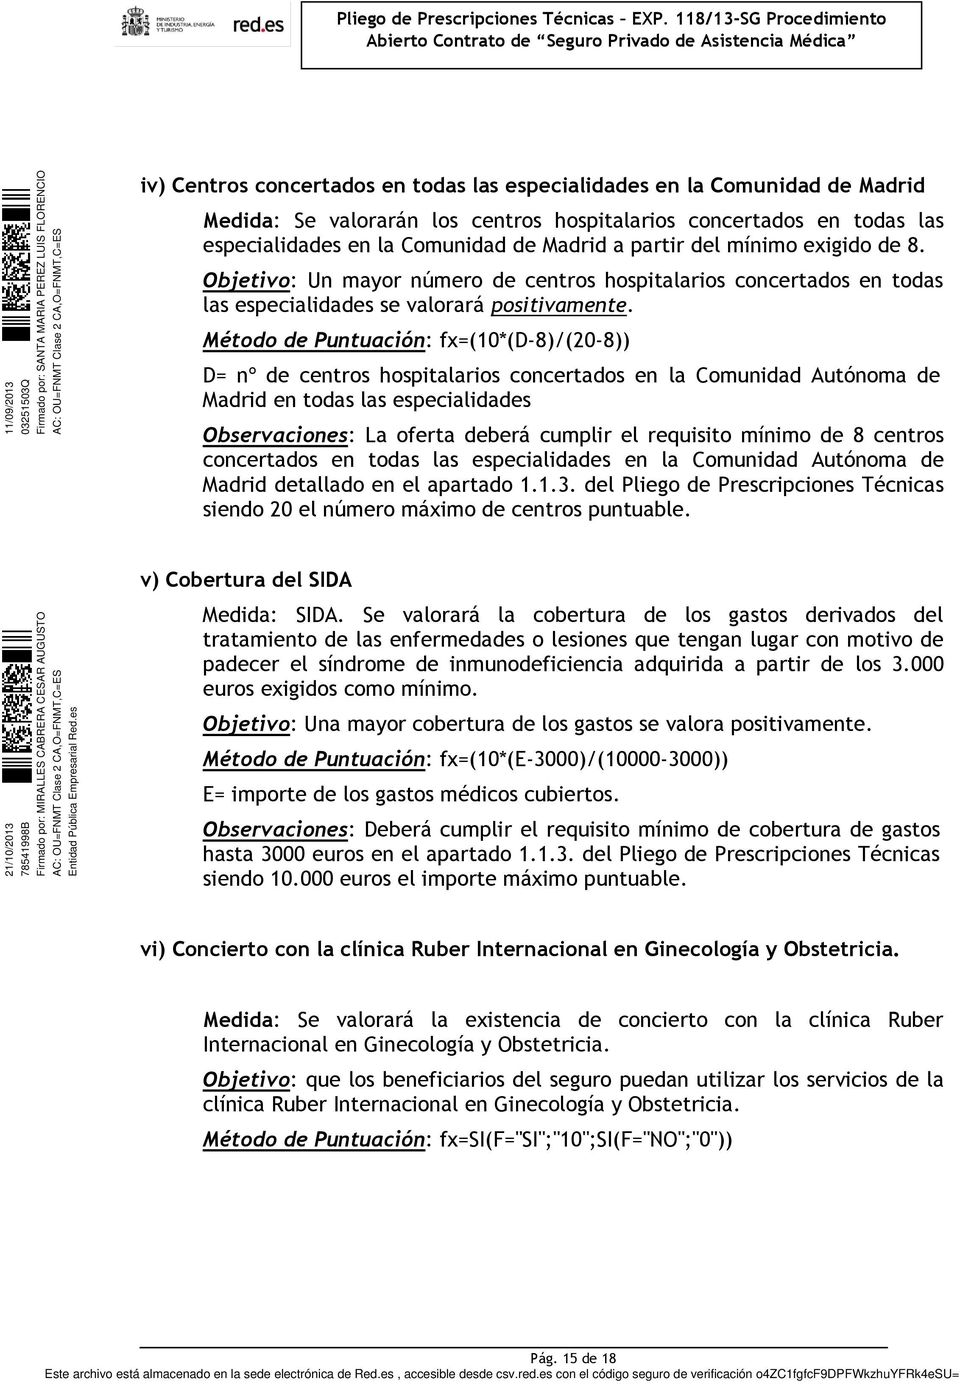 Método de Puntuación: fx=(10*(d-8)/(20-8)) D= nº de centros hospitalarios concertados en la Comunidad Autónoma de Madrid en todas las especialidades Observaciones: La oferta deberá cumplir el